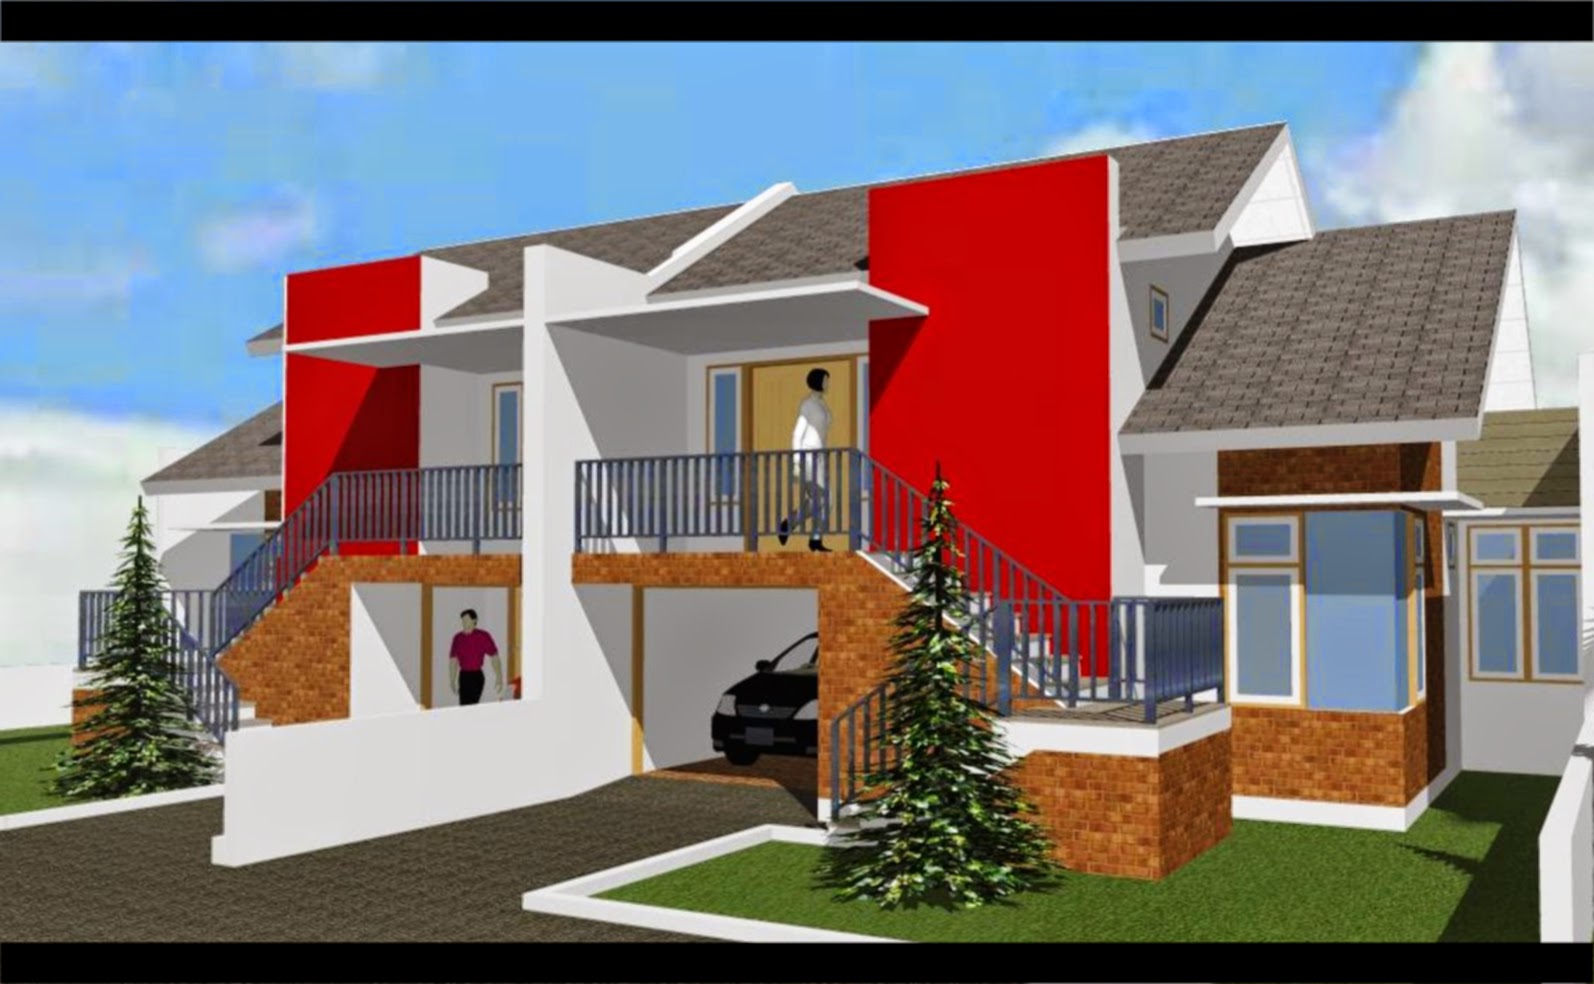 64 Design Rumah Minimalis Warna Merah Desain Rumah Minimalis Terbaru